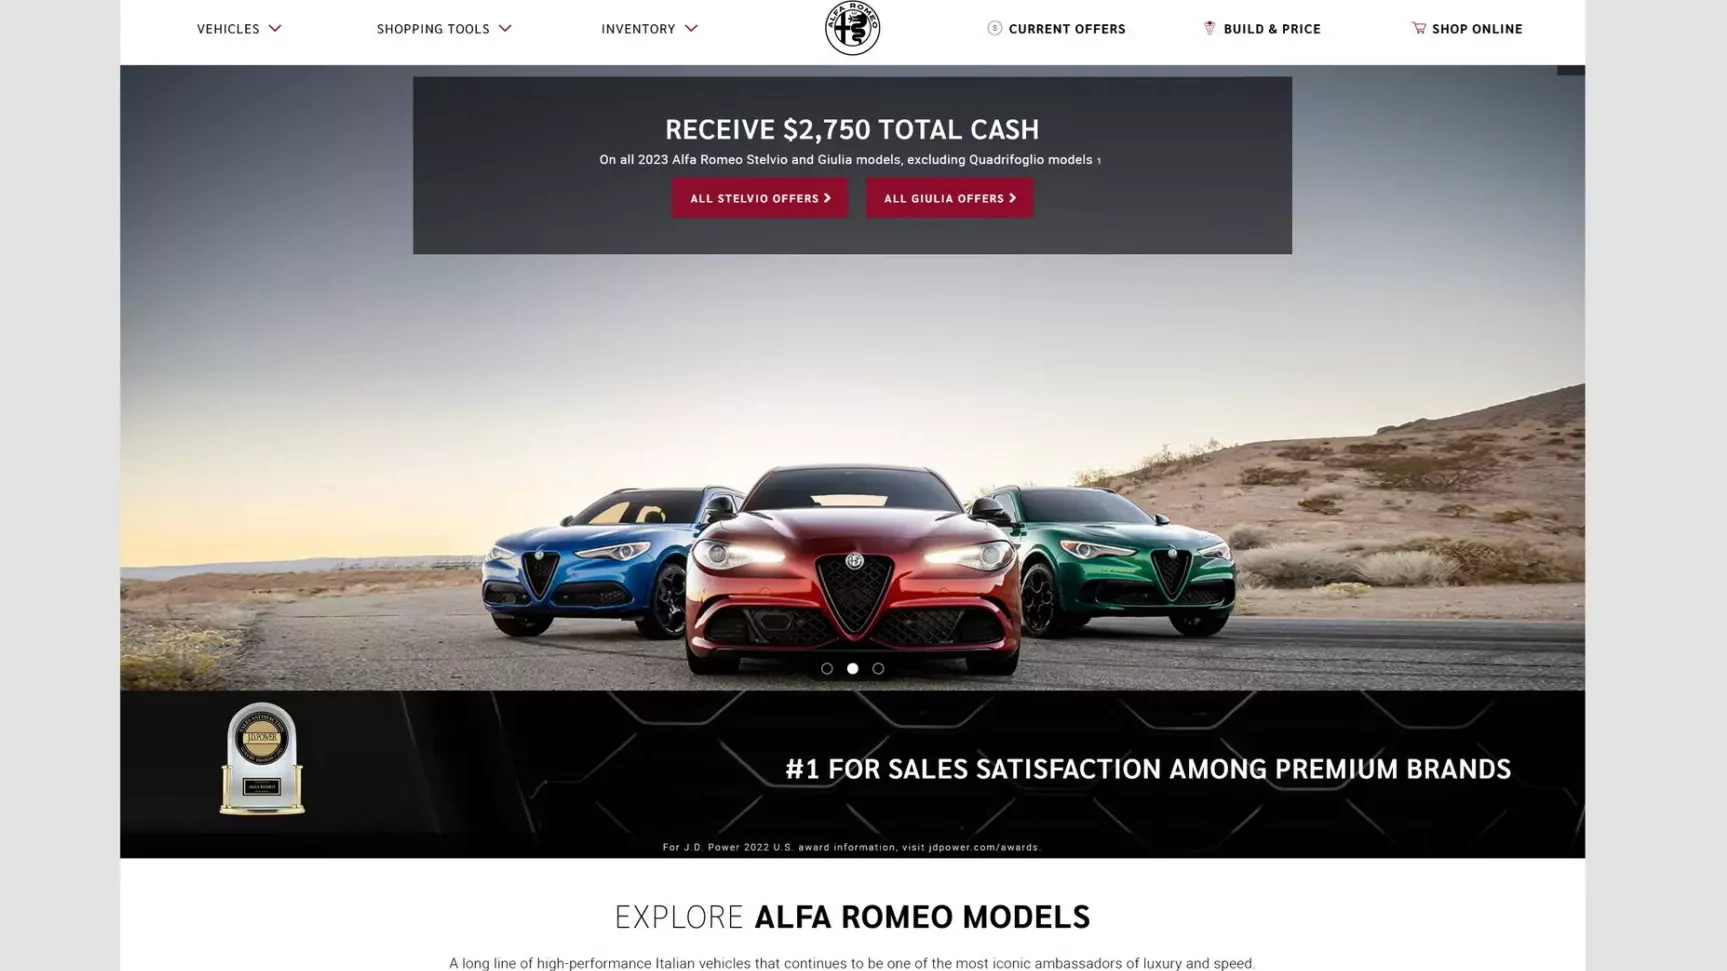 Alfa Romeo y RAM con los mejores websites; VW y Volvo los peores, según J.D. Power. 1